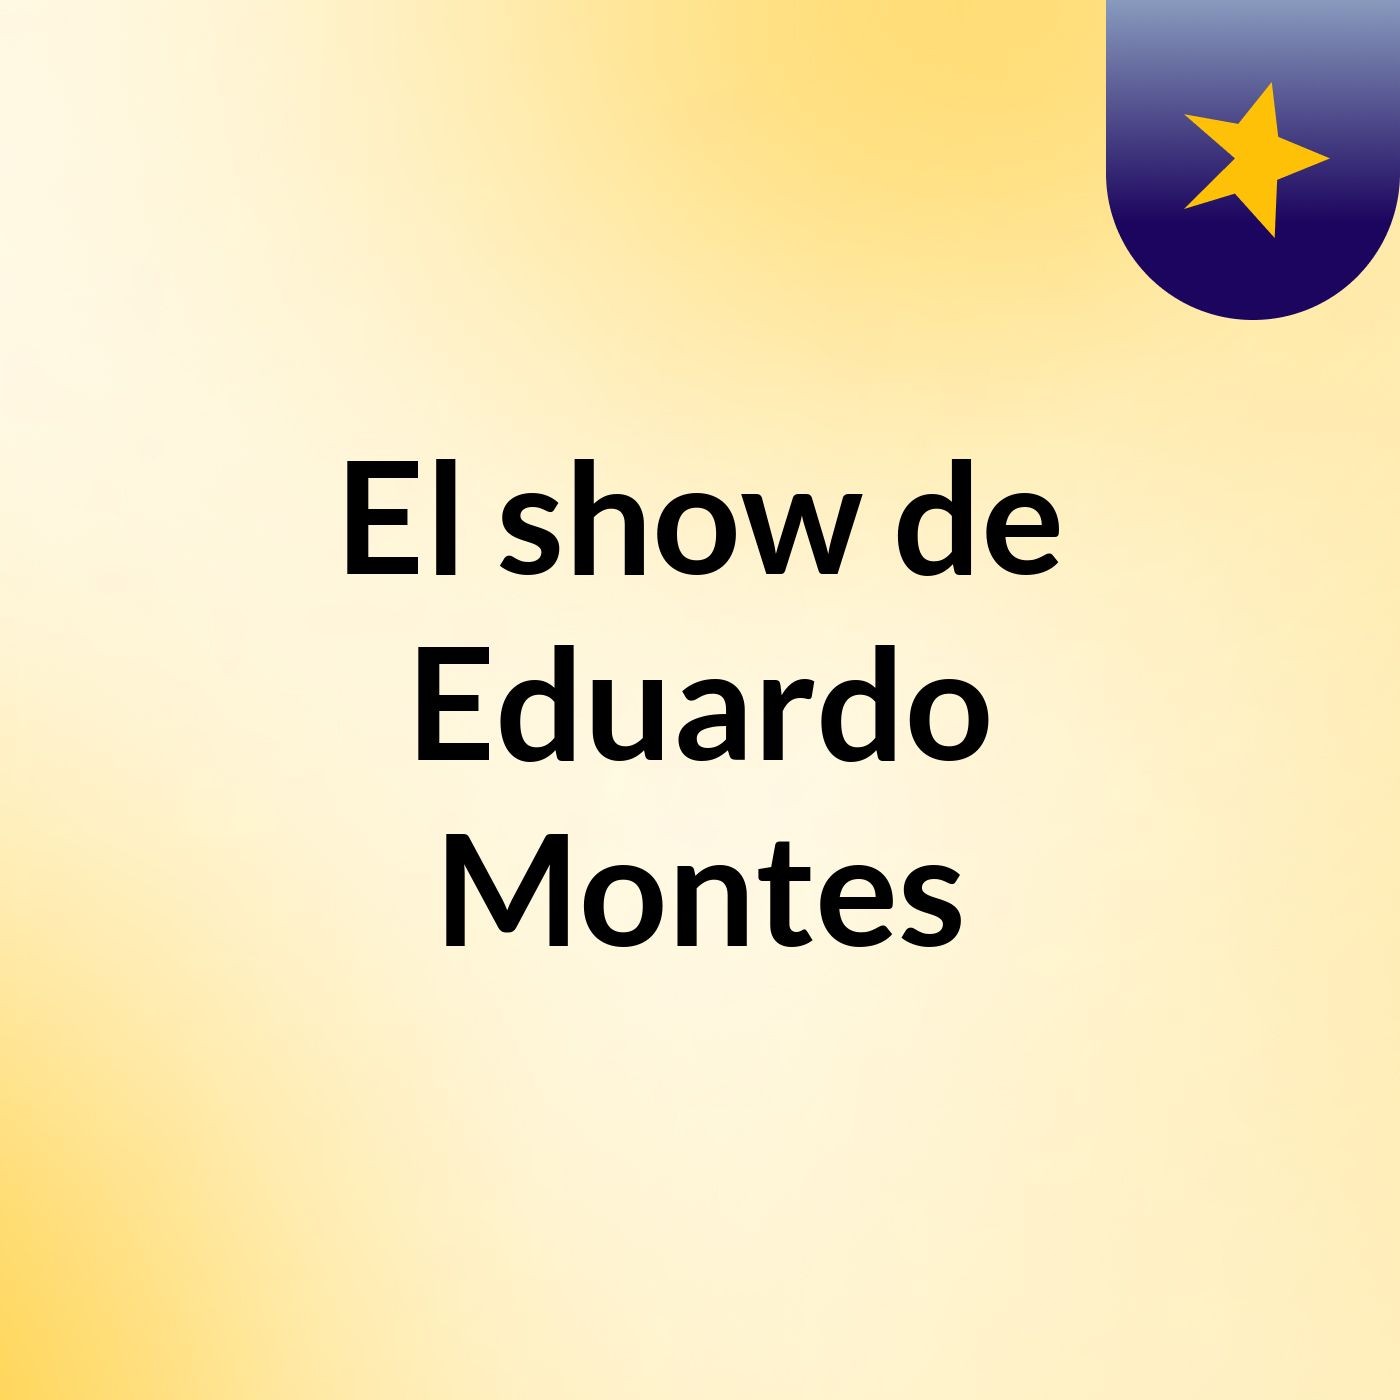 El show de Eduardo Montes